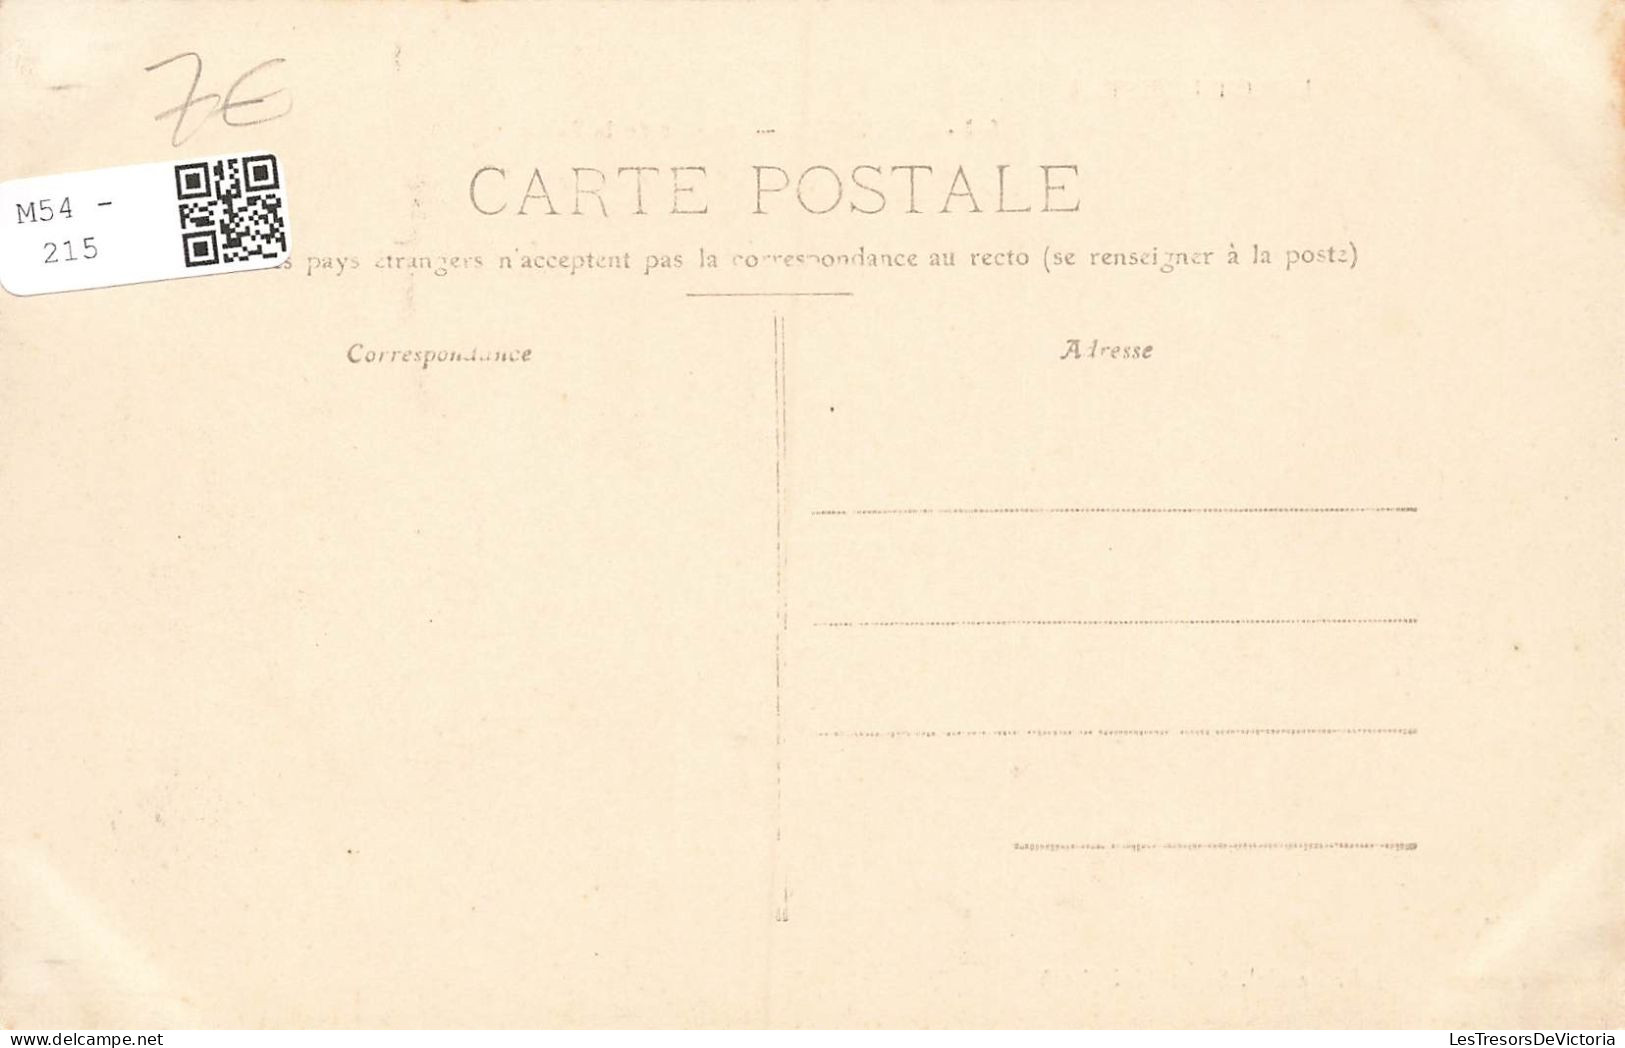 FRANCE - Le Lot Illustré - Bretenoux - Avenue De La Poste - Animé - Vue Générale - Carte Postale Ancienne - Bretenoux